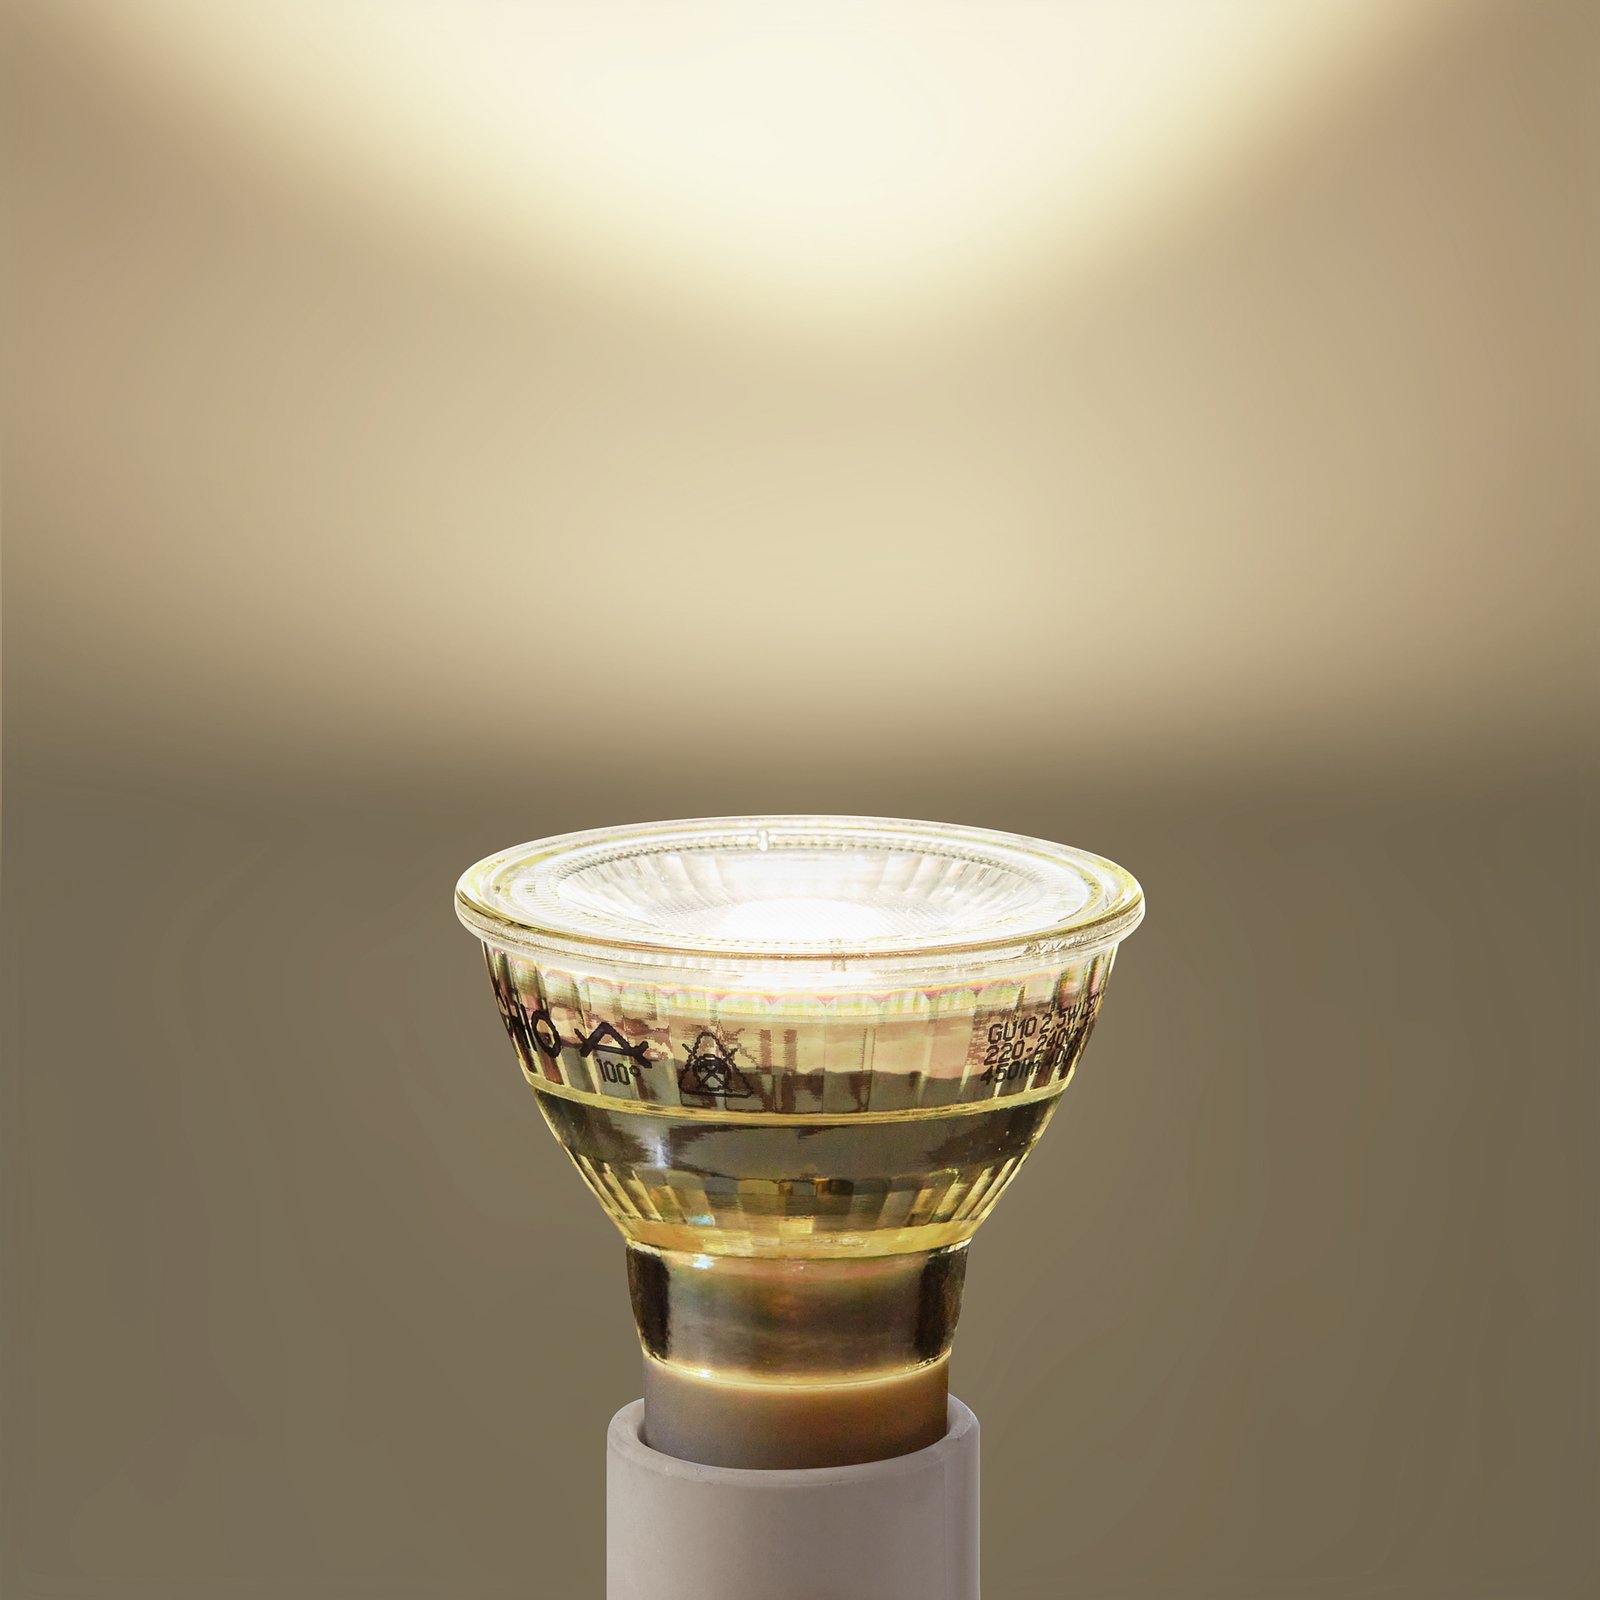 Arcchio LED lamp GU10 2.5W 4000K 450lm glas set van 5